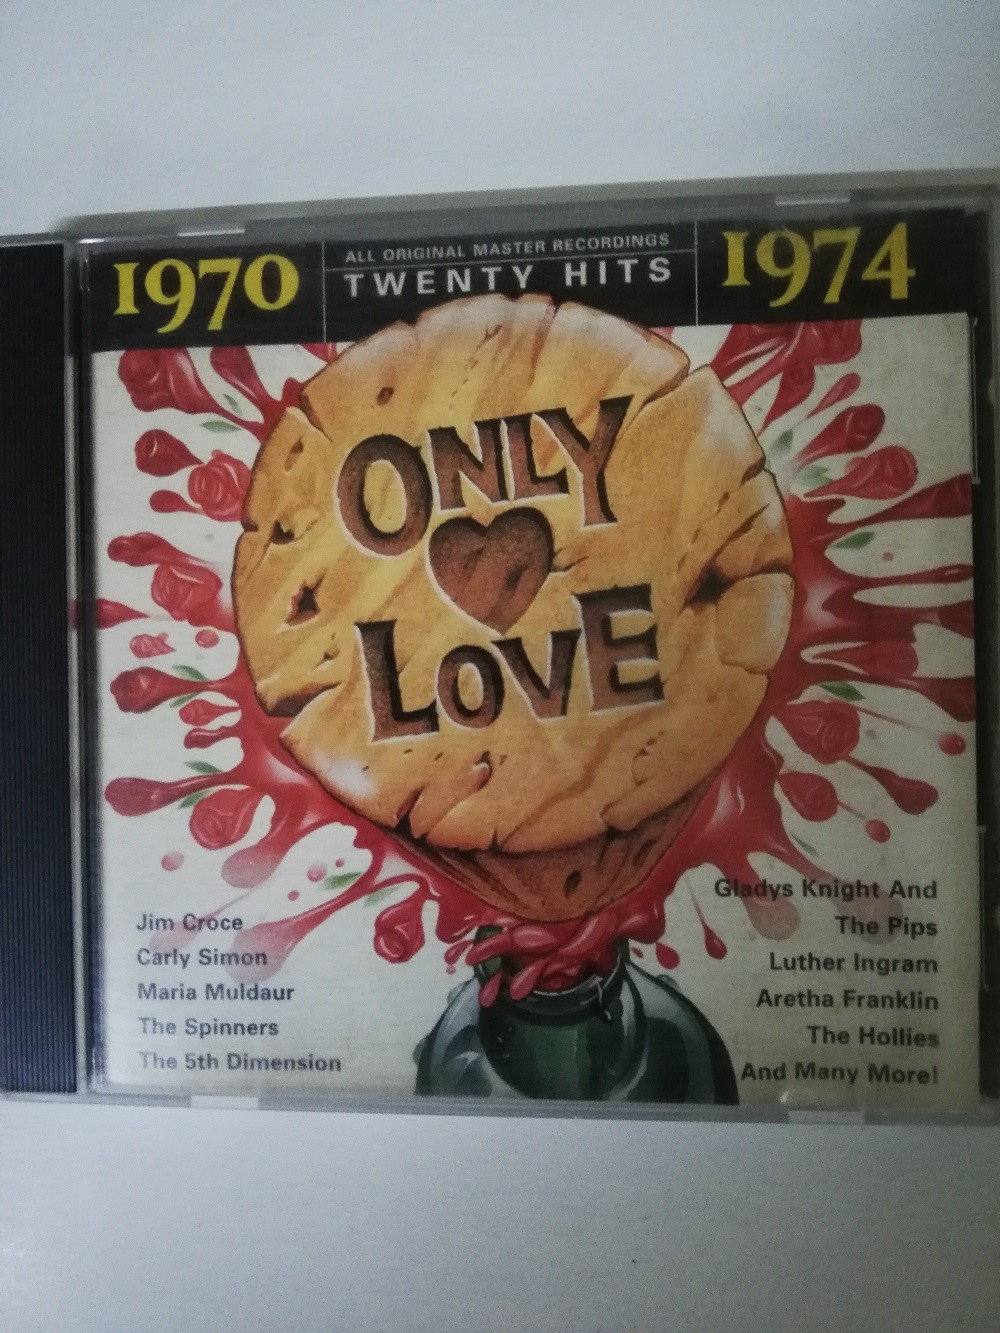 Imagen CD ONLY LOVE -1970-1974 1